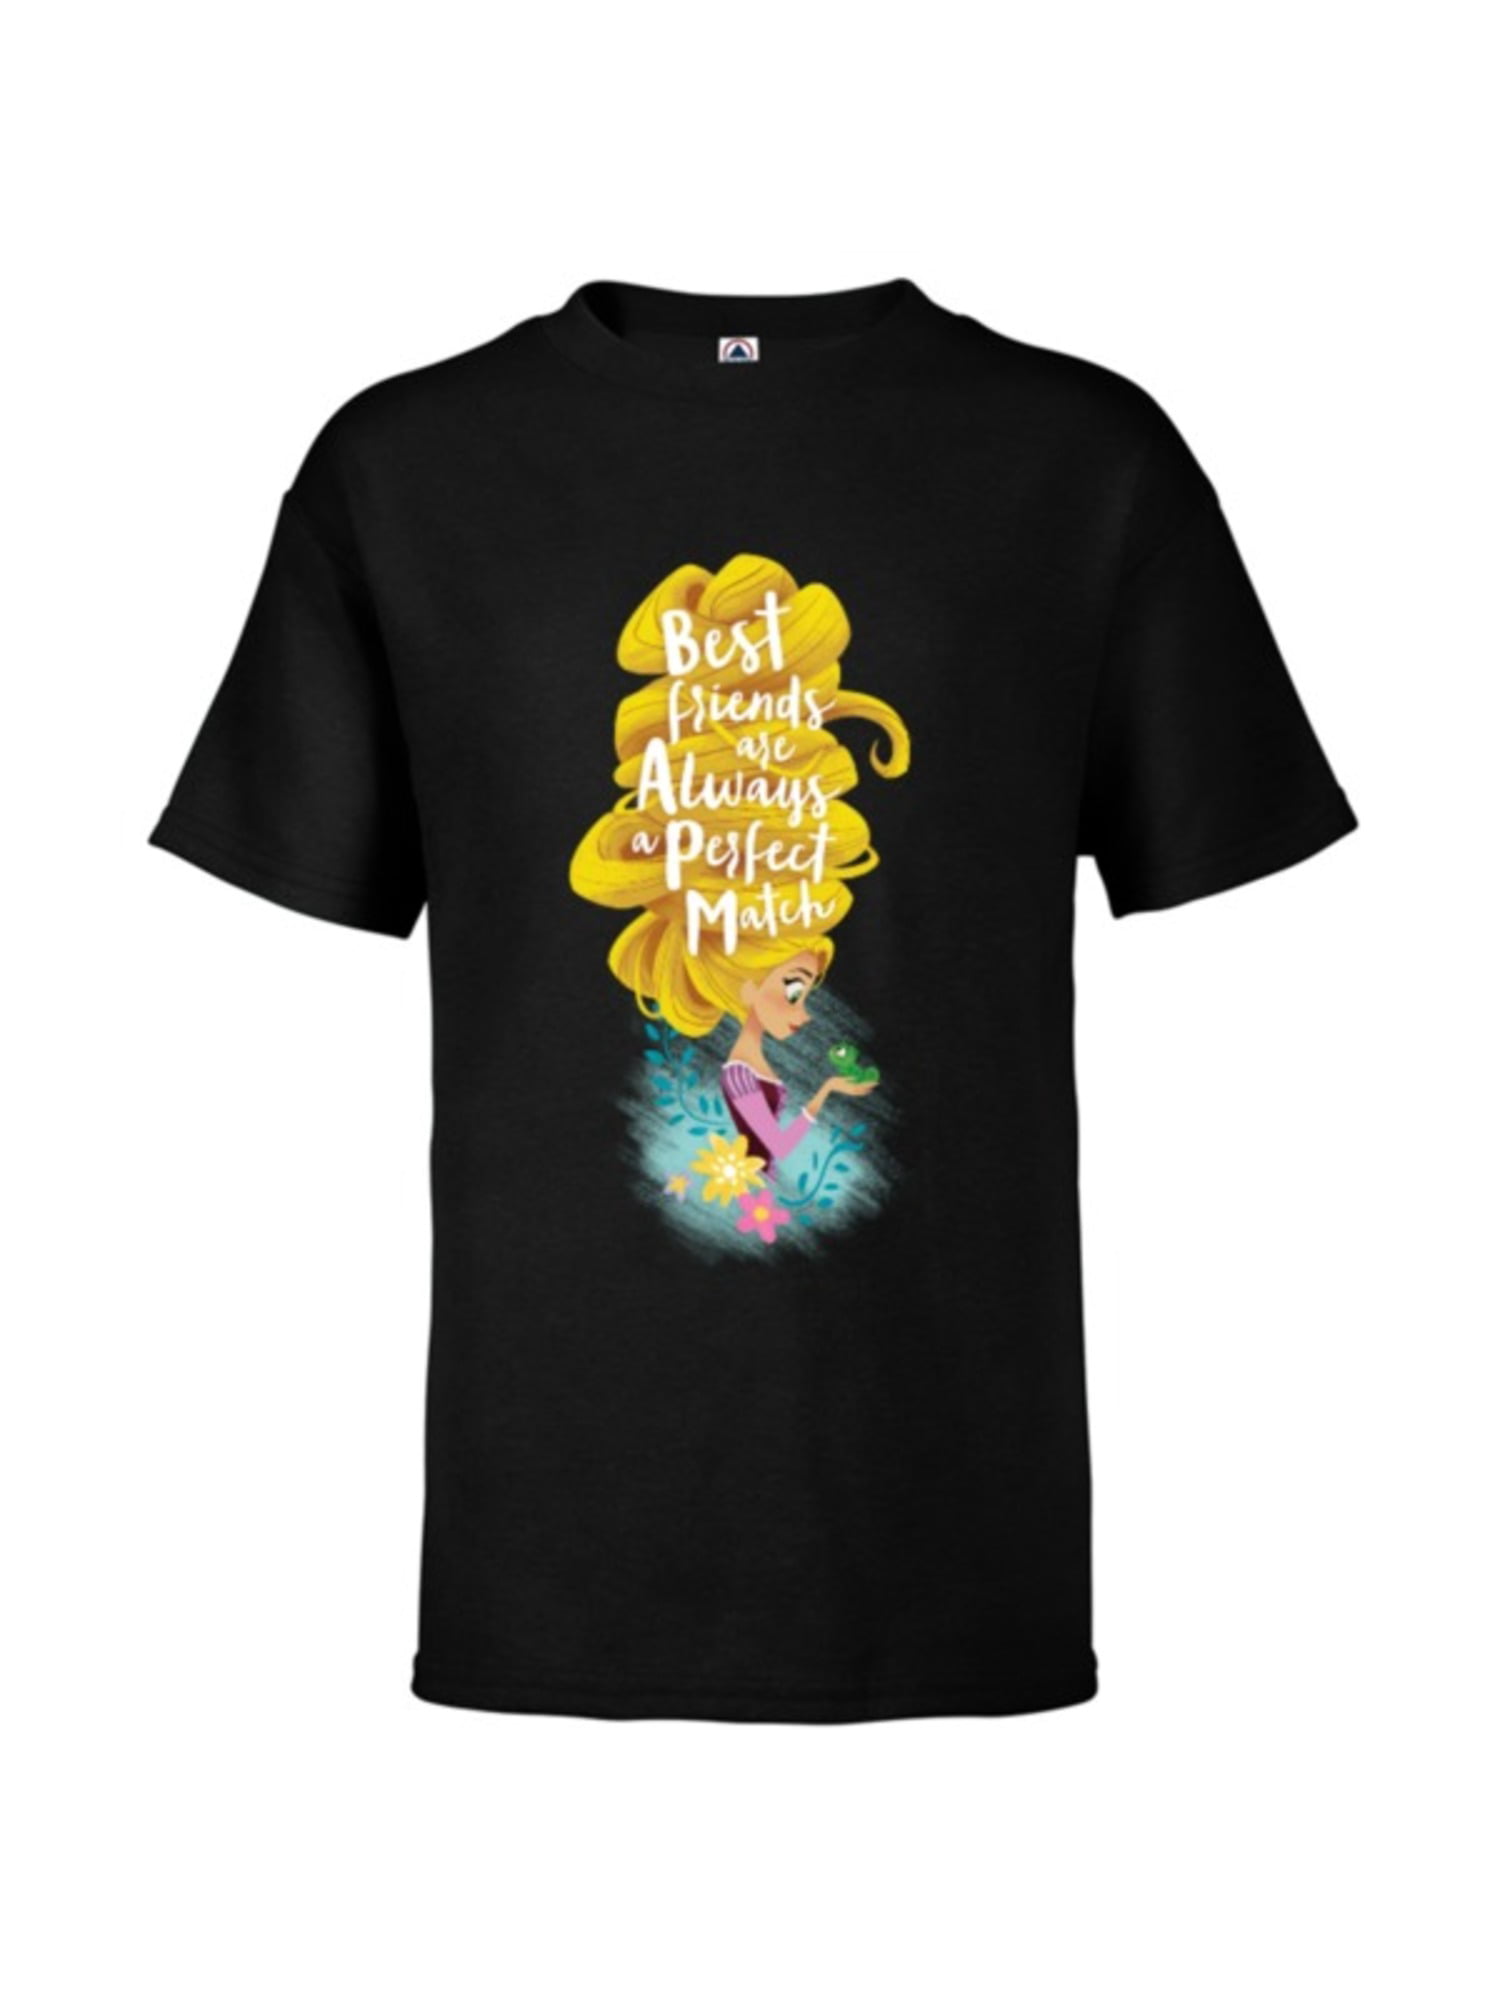 Rapunzel Text Art Short-Sleeve Unisex T-Shirt